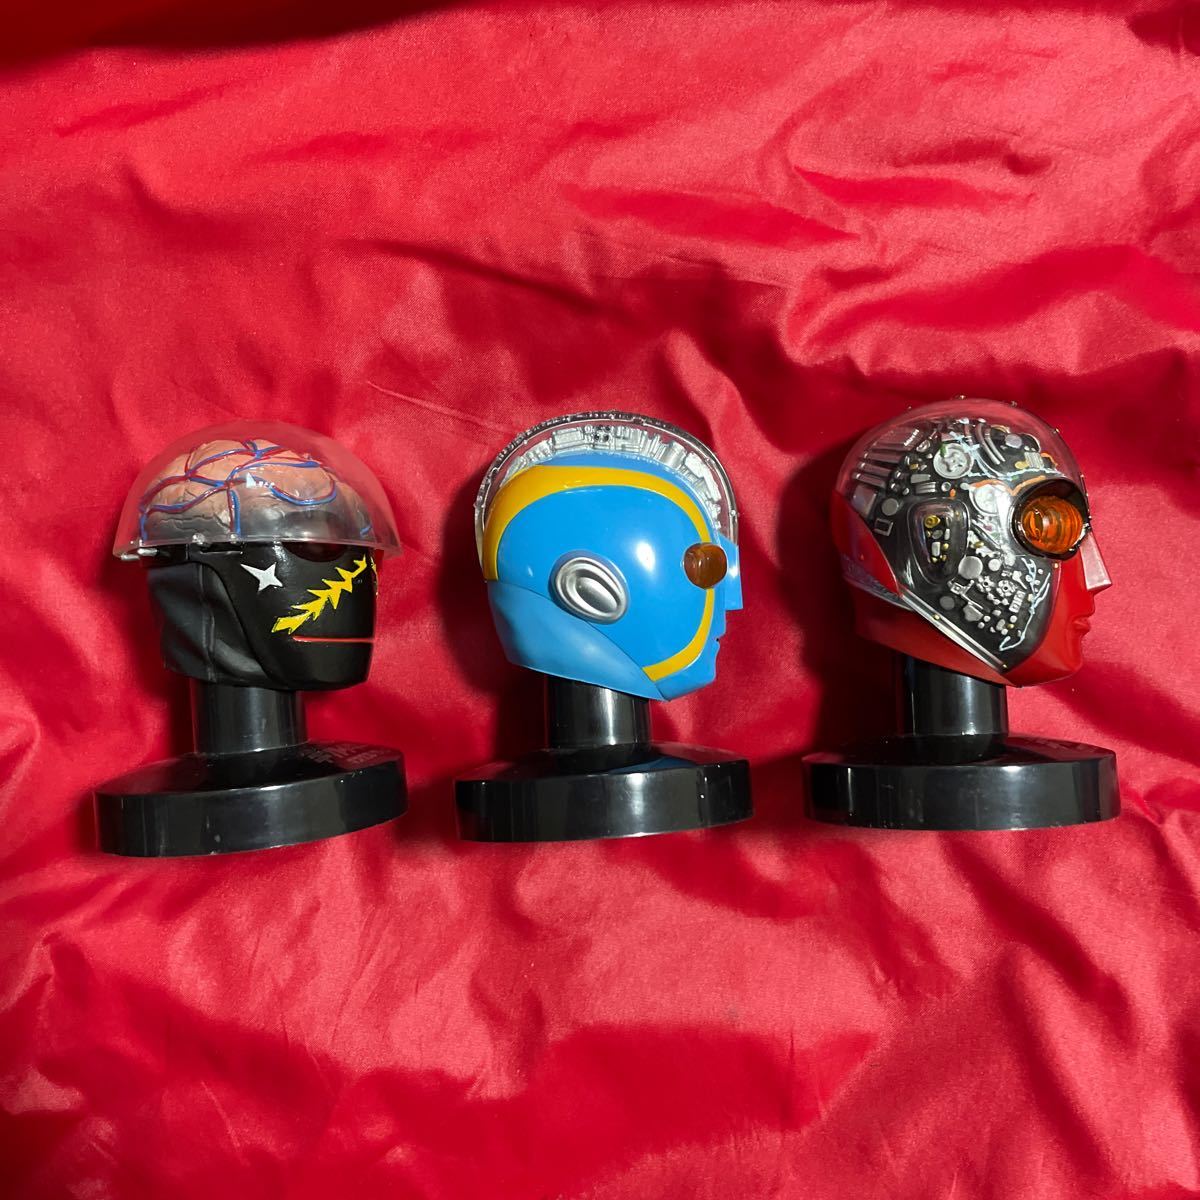 バンダイ マスクコレクション 人造人間 キカイダー ハカイダー キカイダー01 の3体セット の画像3